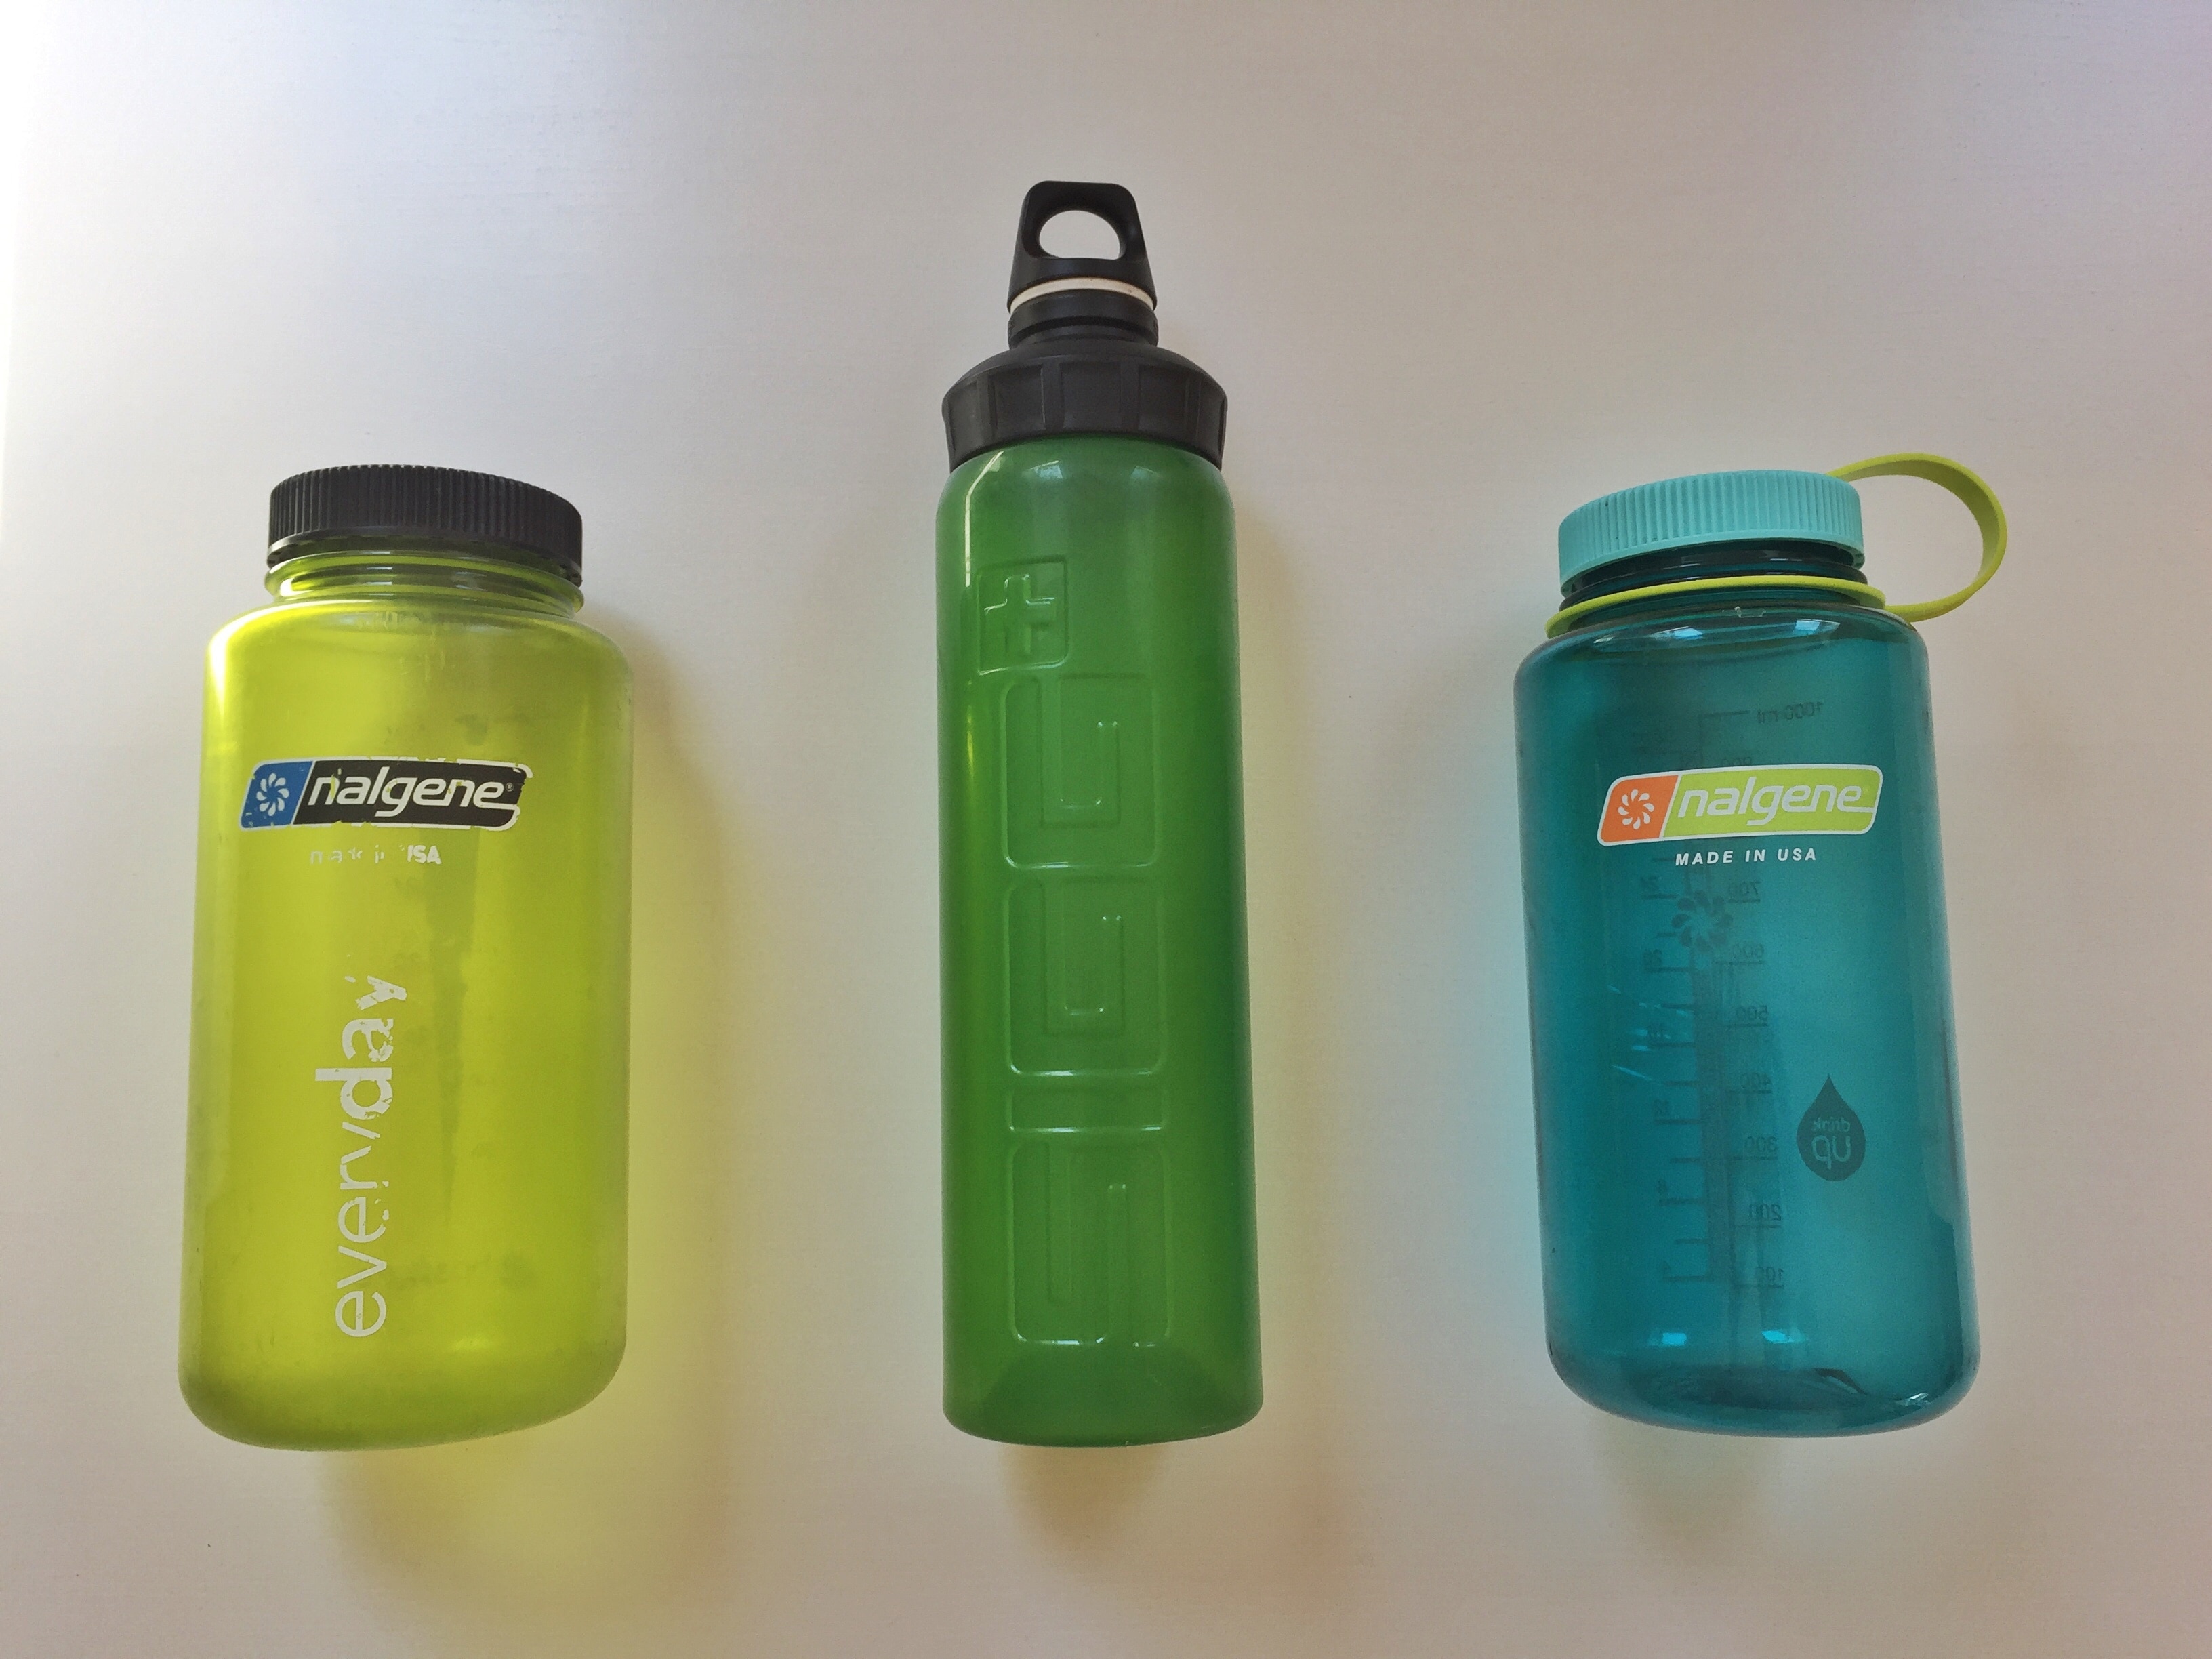 Die BPA-freien Hartplastikflaschen von Nalgene